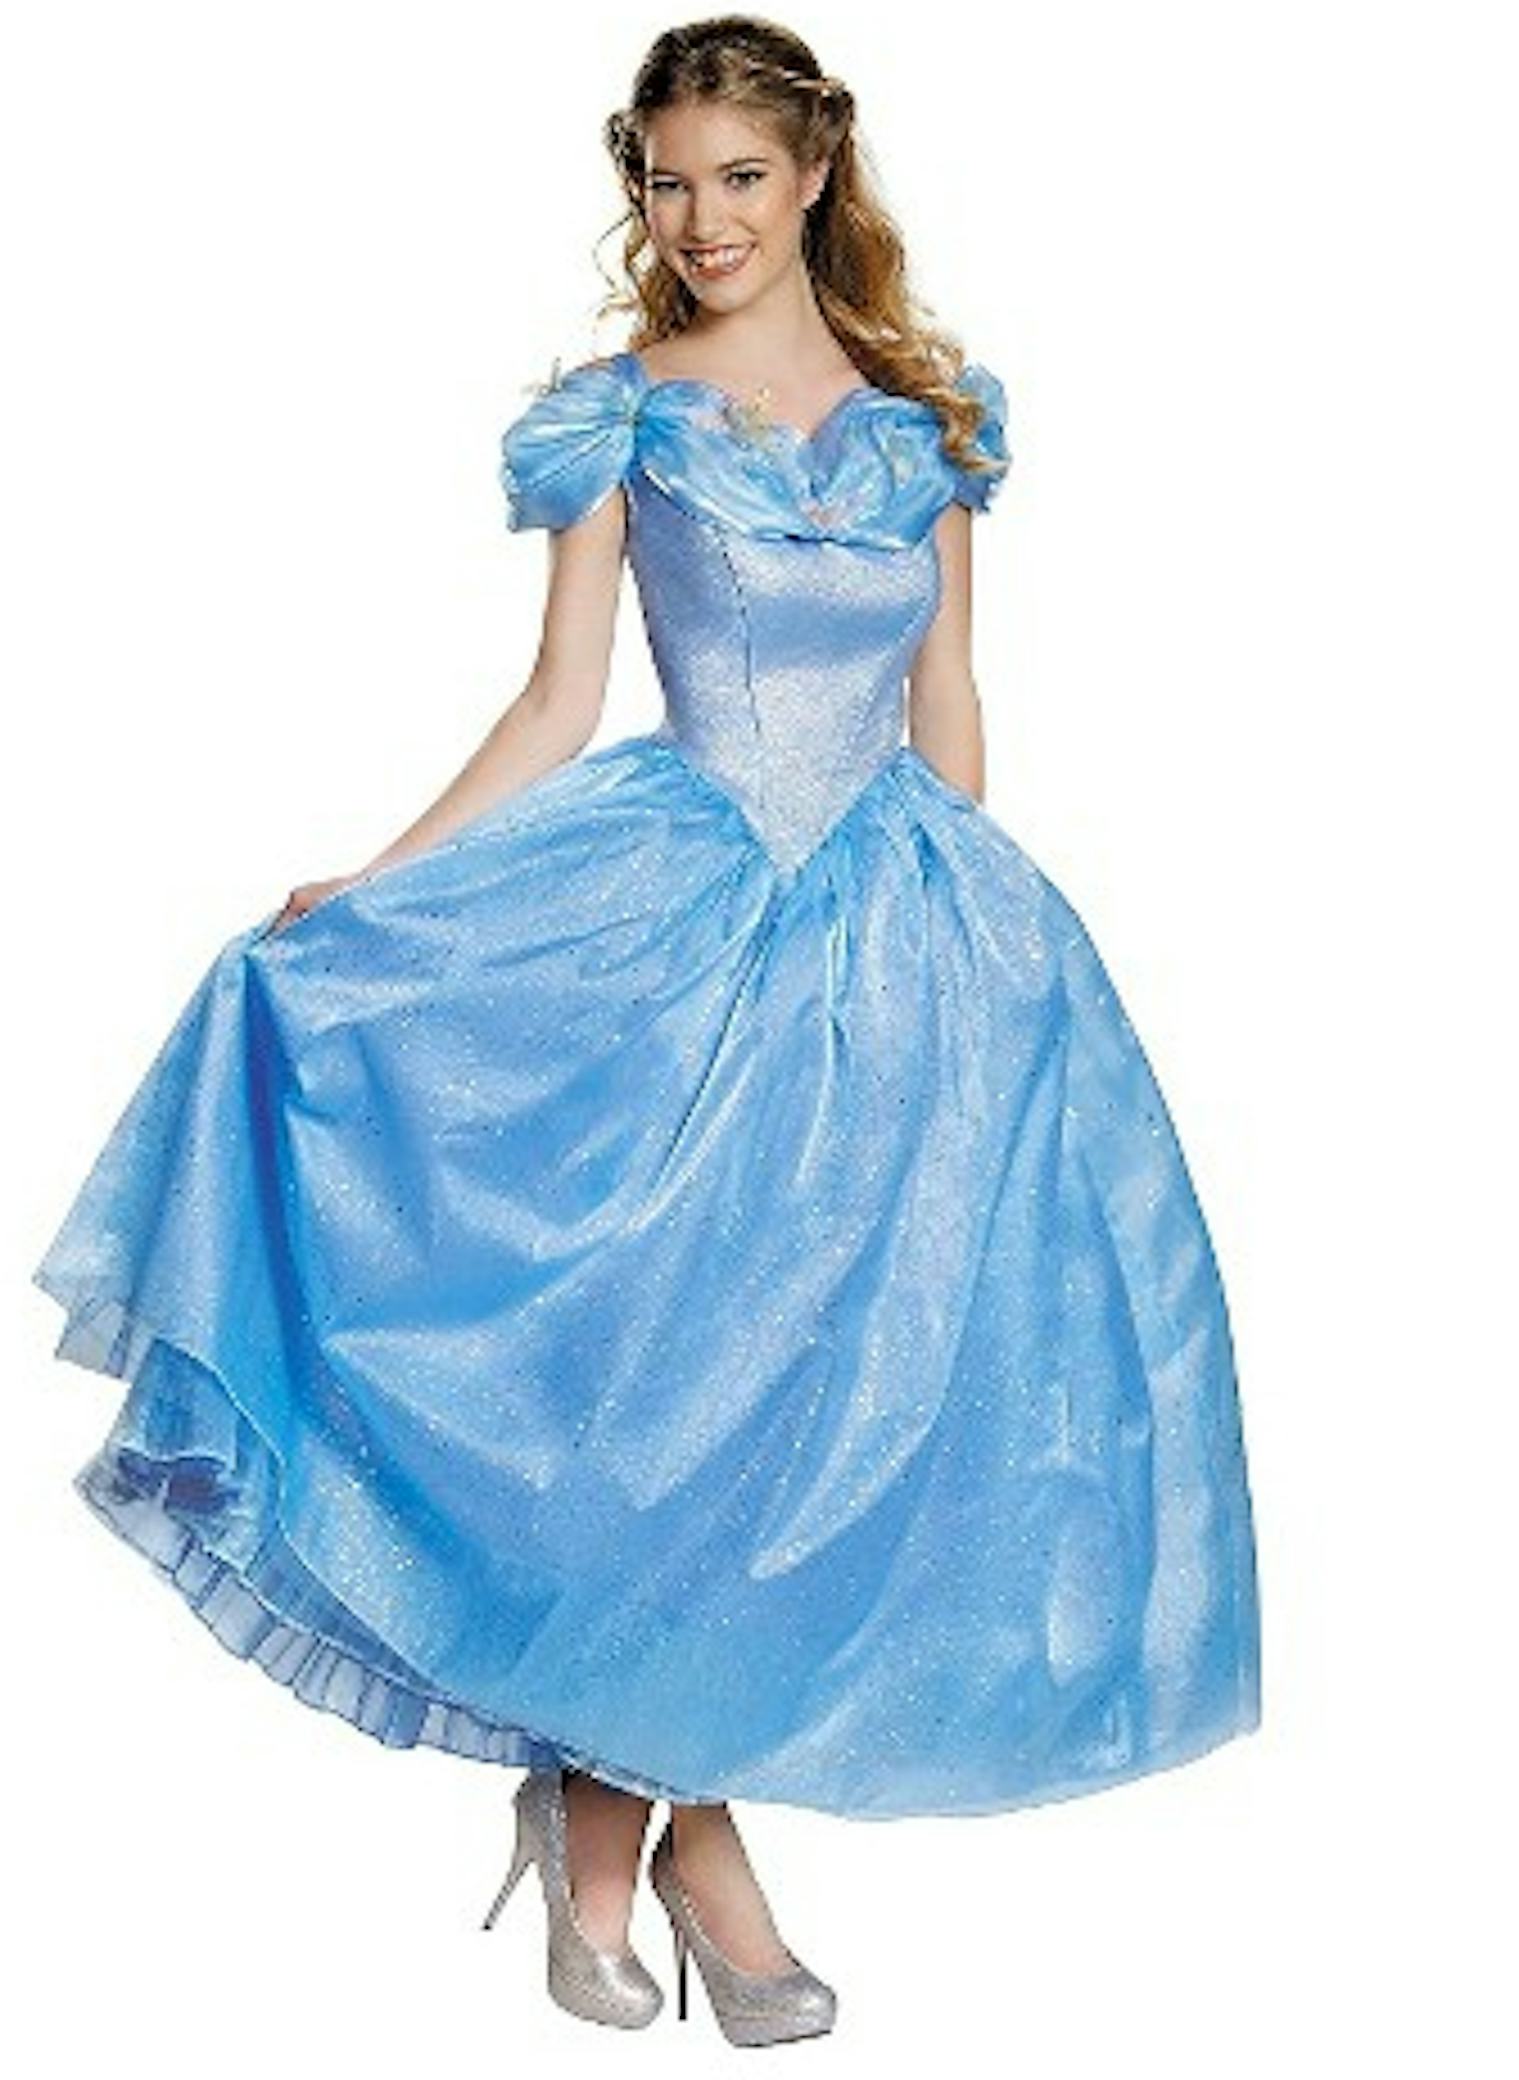 How To Dress Like A Disney Princess For Halloween 2139